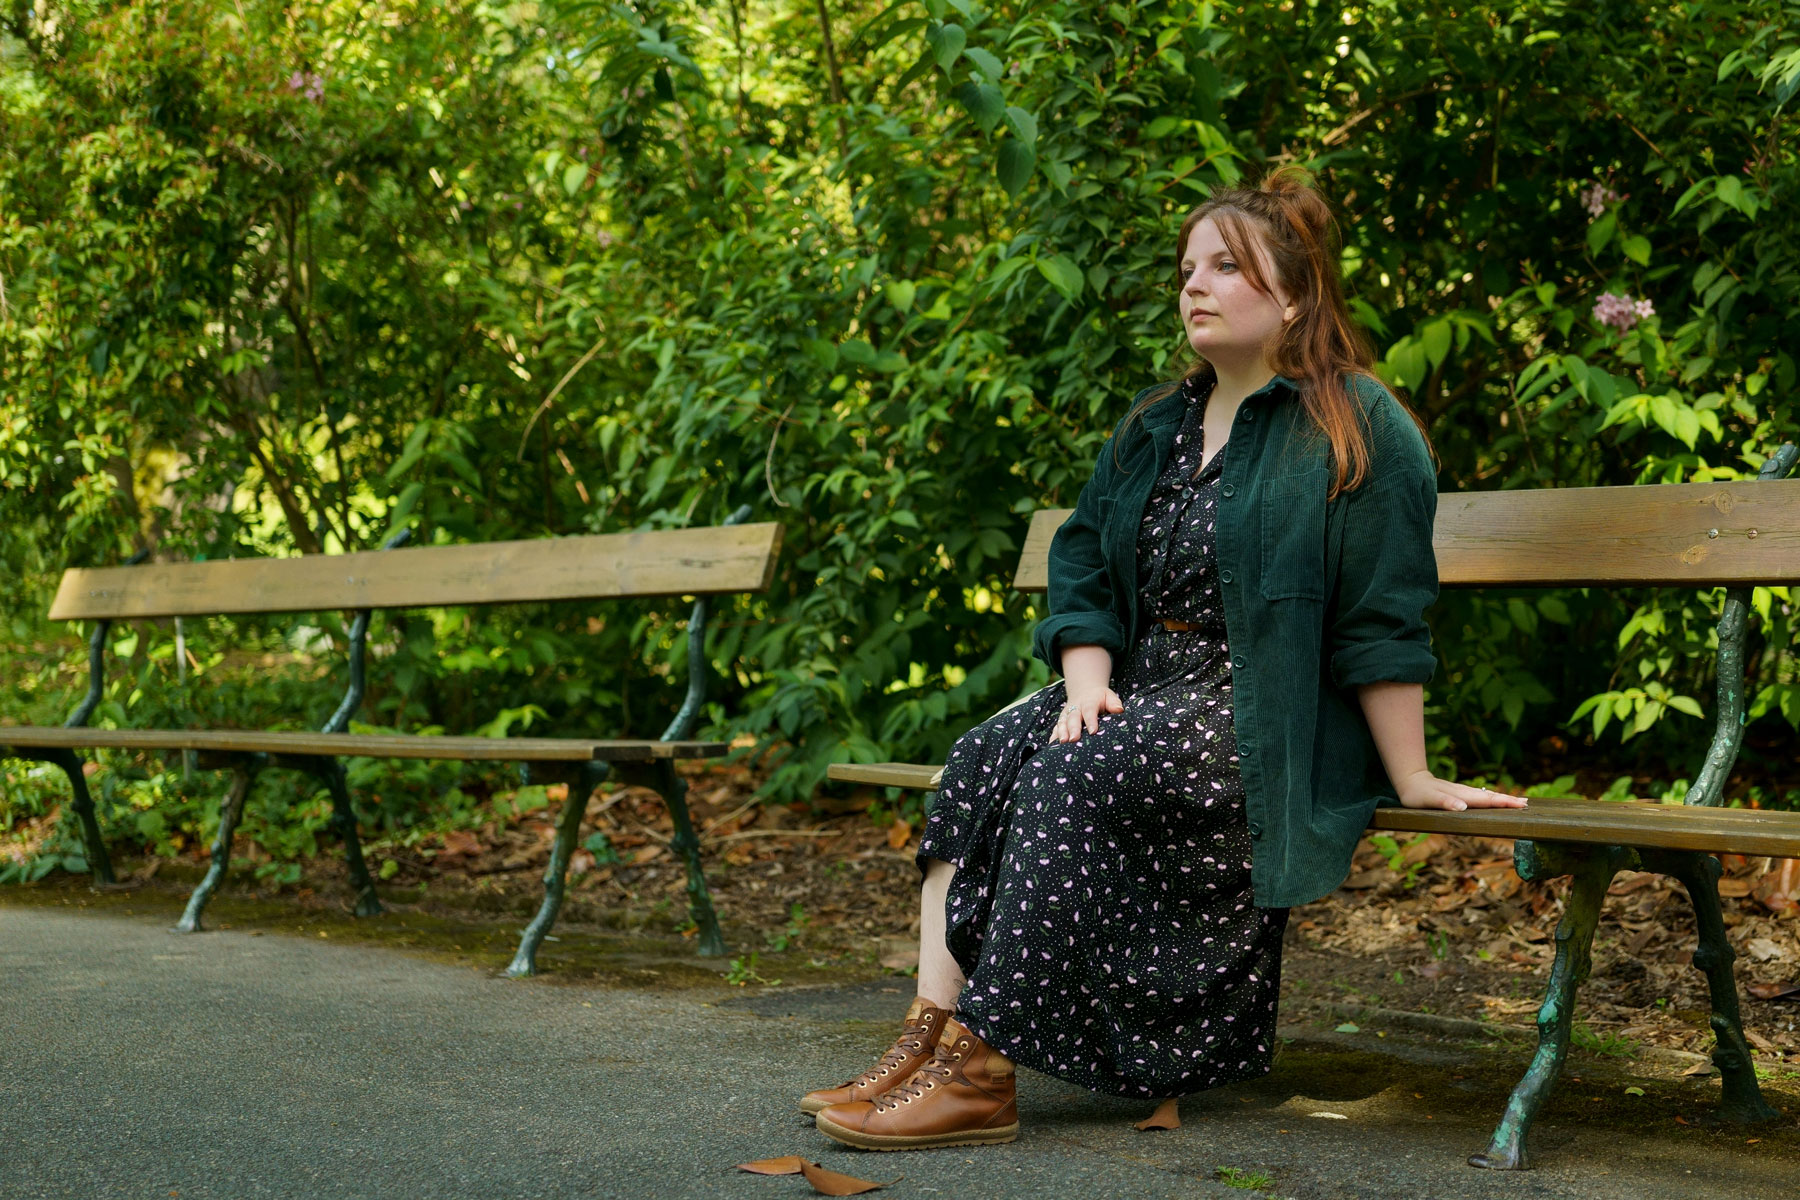 Fotografía de Marie en un banco de un parque con unos zapatos de botín de Pikolinos.